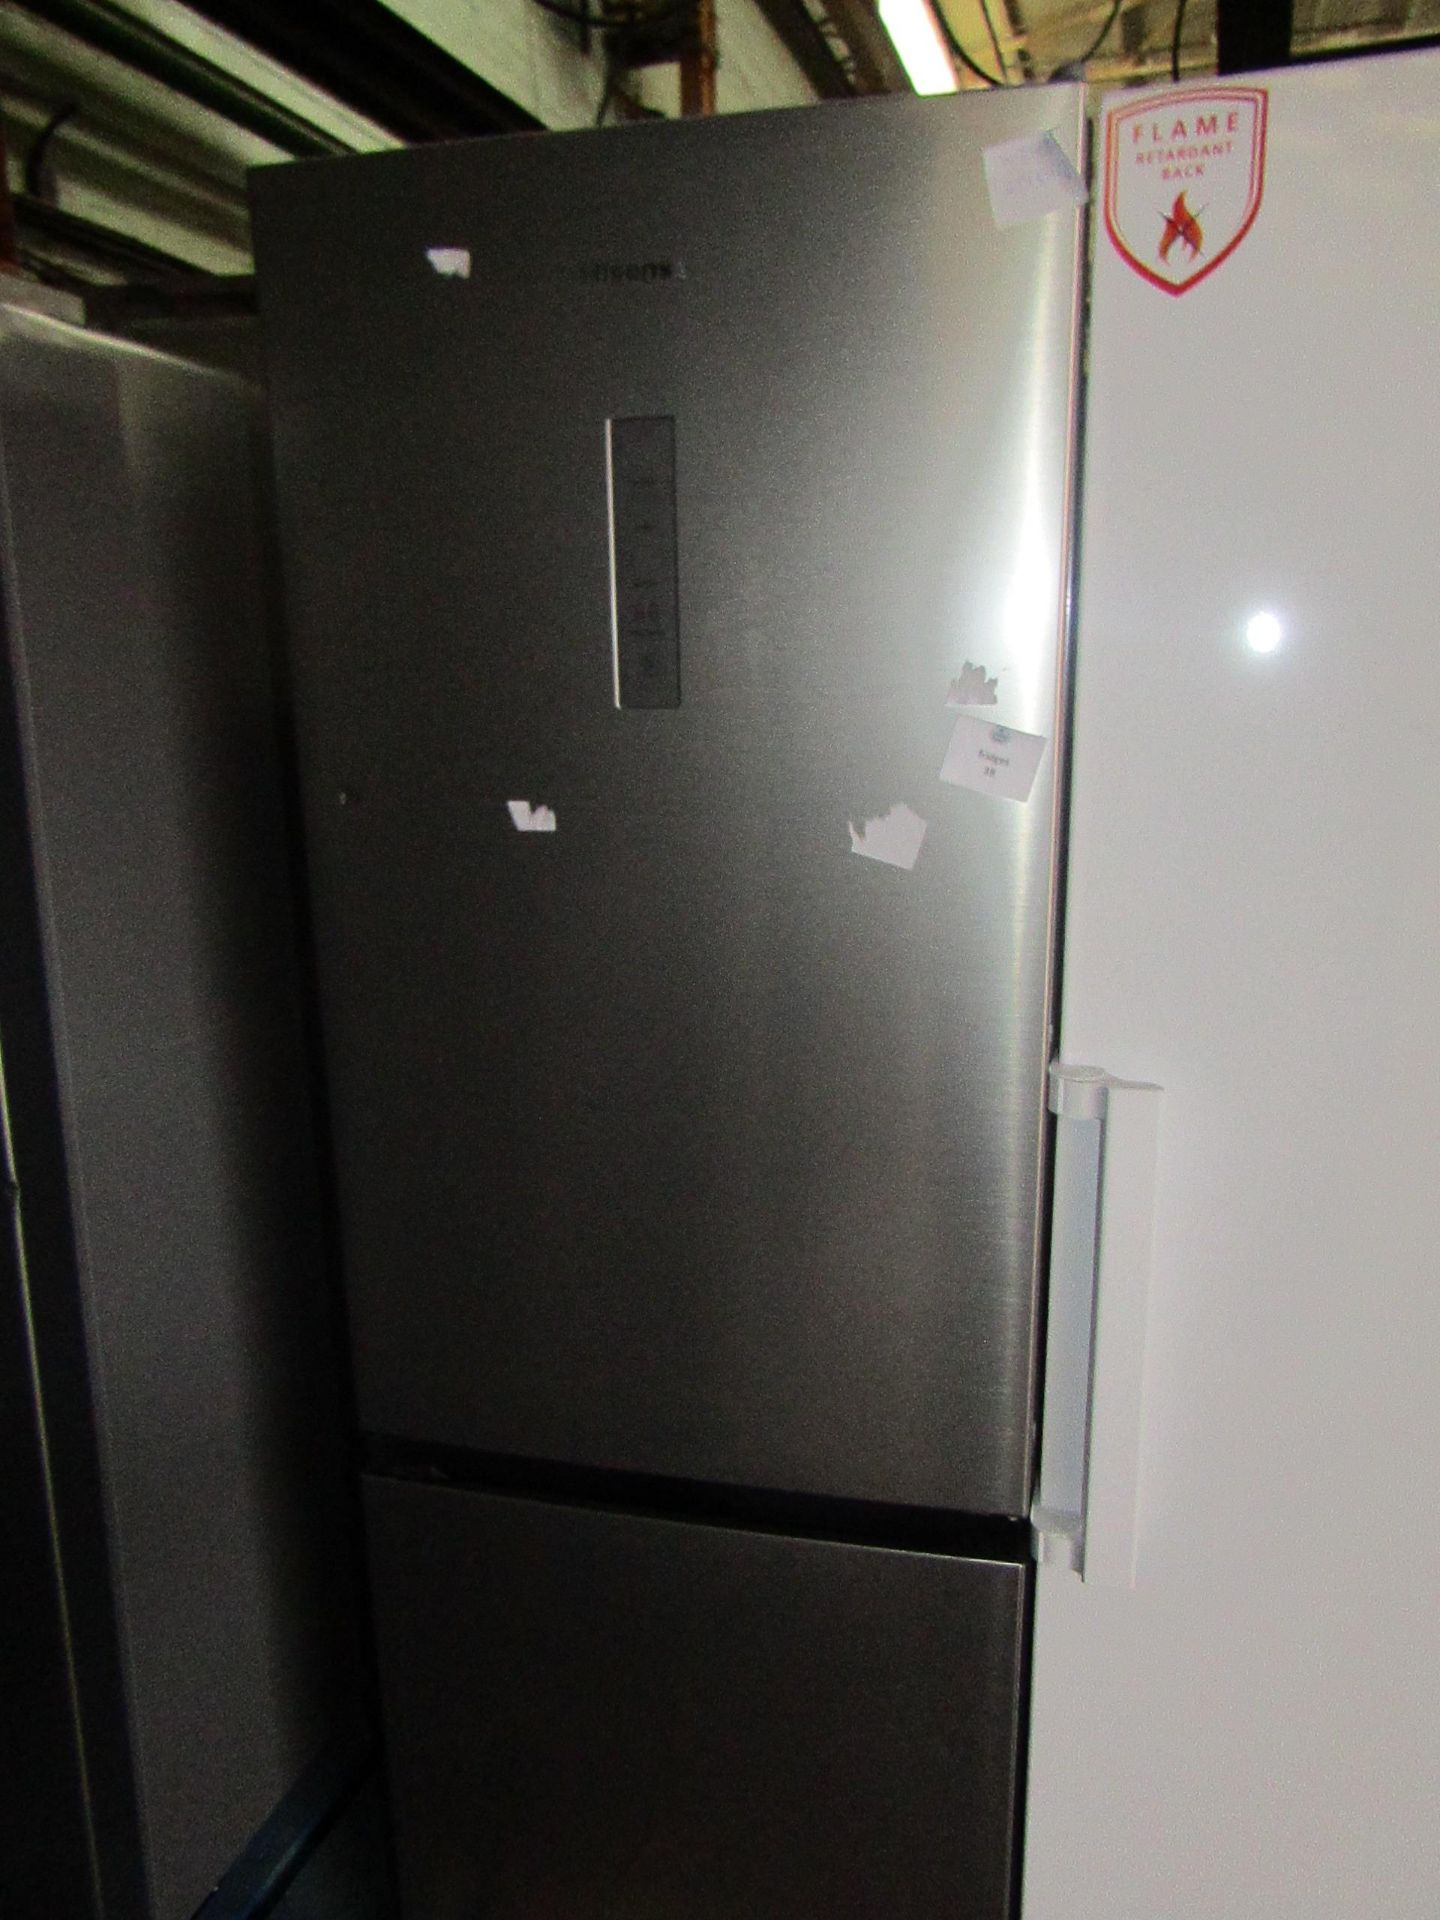 Hisense 60/40 fridge freezer, tested working